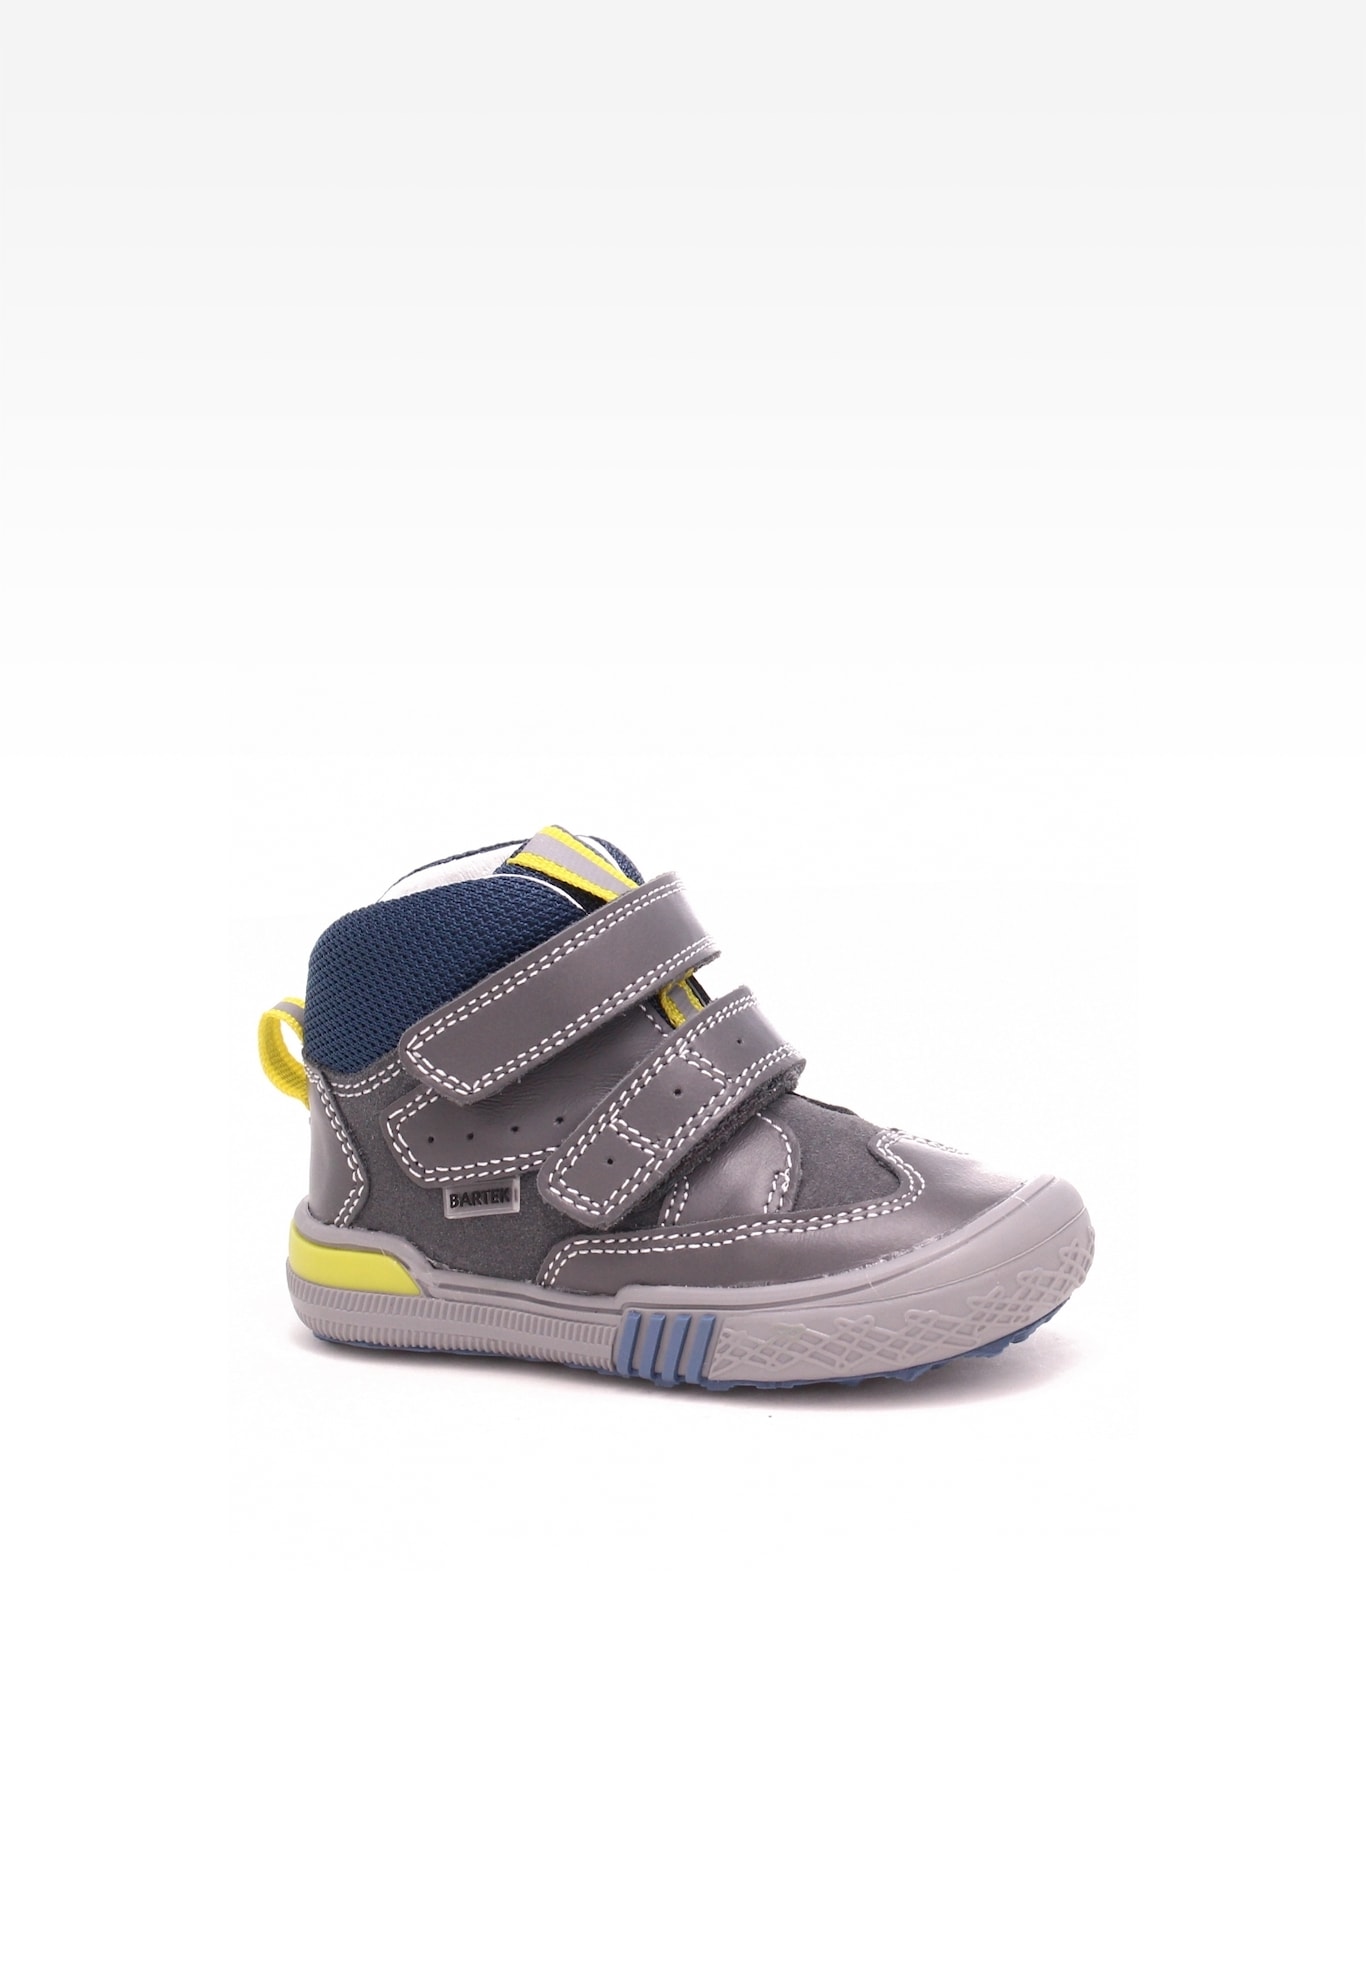 Sneakers BARTEK 21704-015, dla chłopców, szaro-żółty